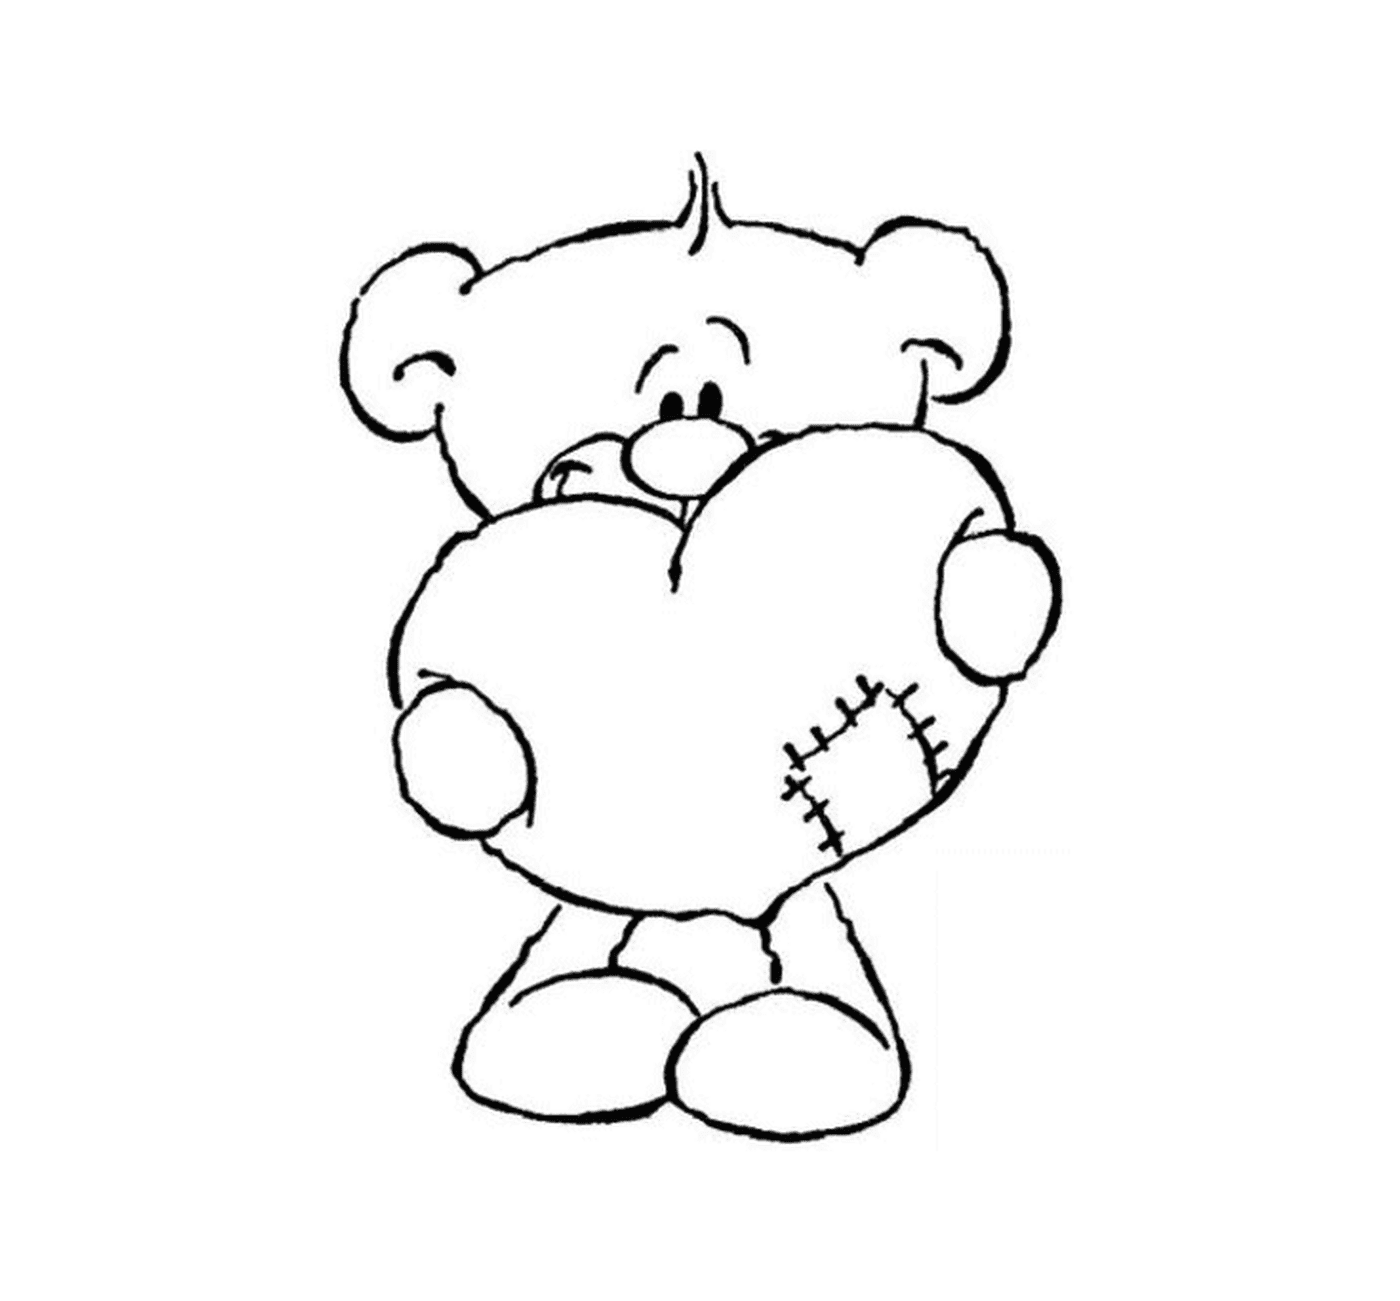  Um urso de pelúcia segurando um coração em suas mãos 